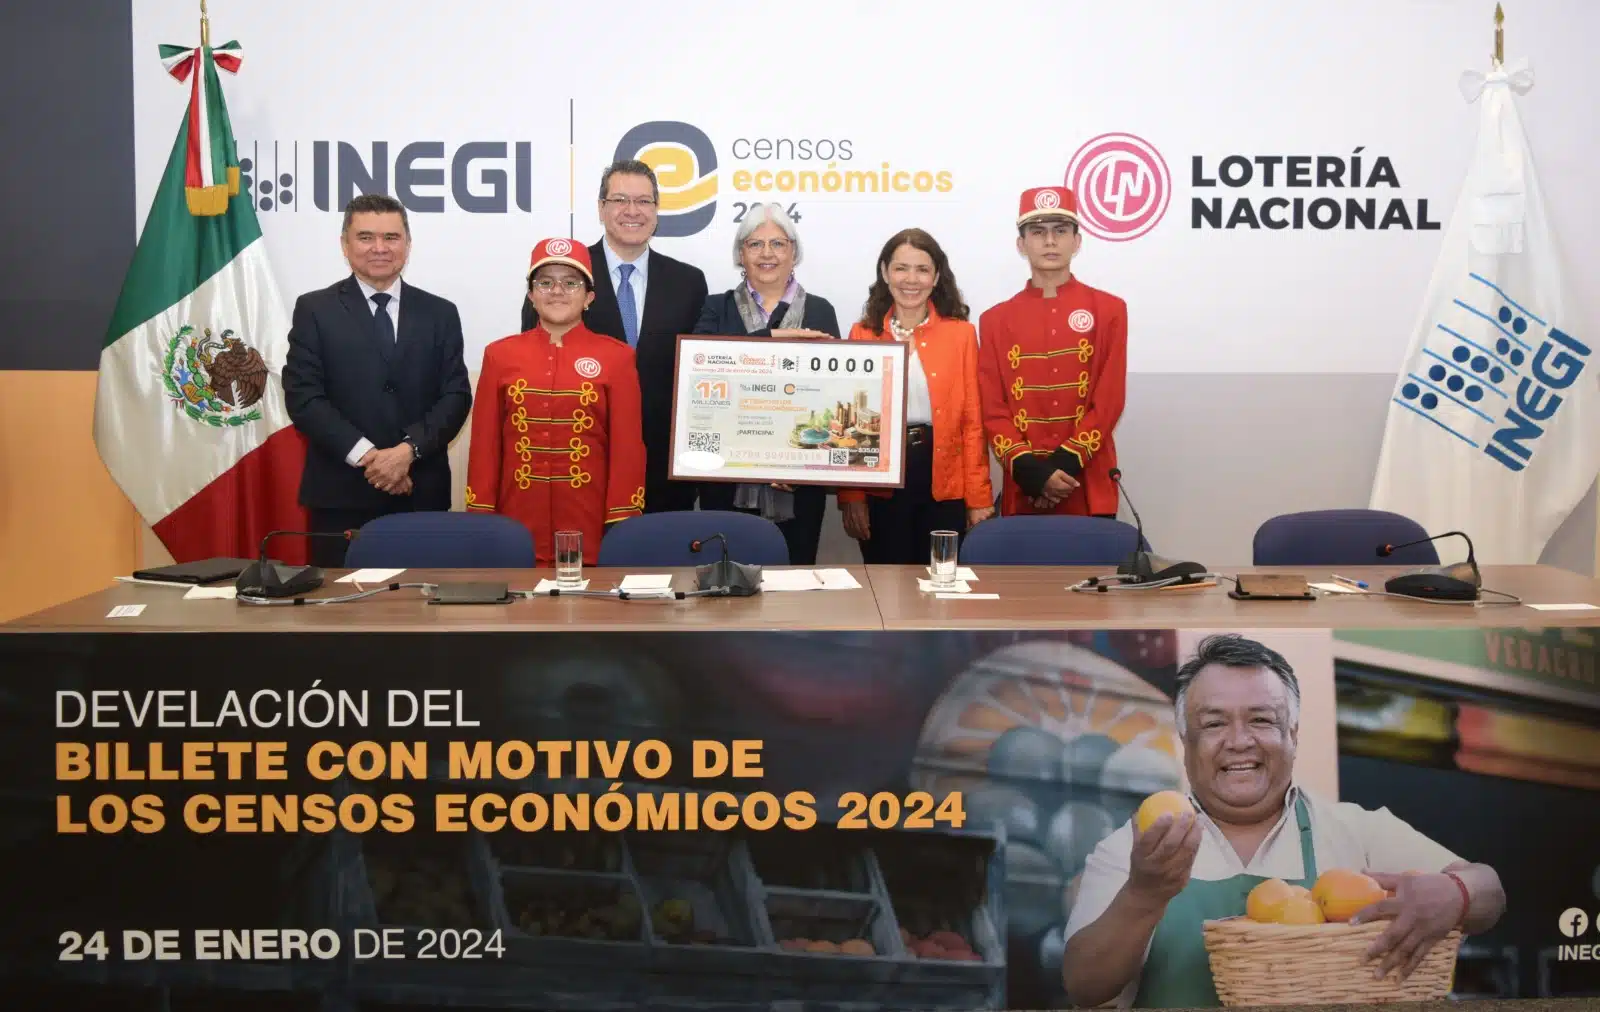 El Inegi y la Lotería Nacional lanzan billete conmemorativo